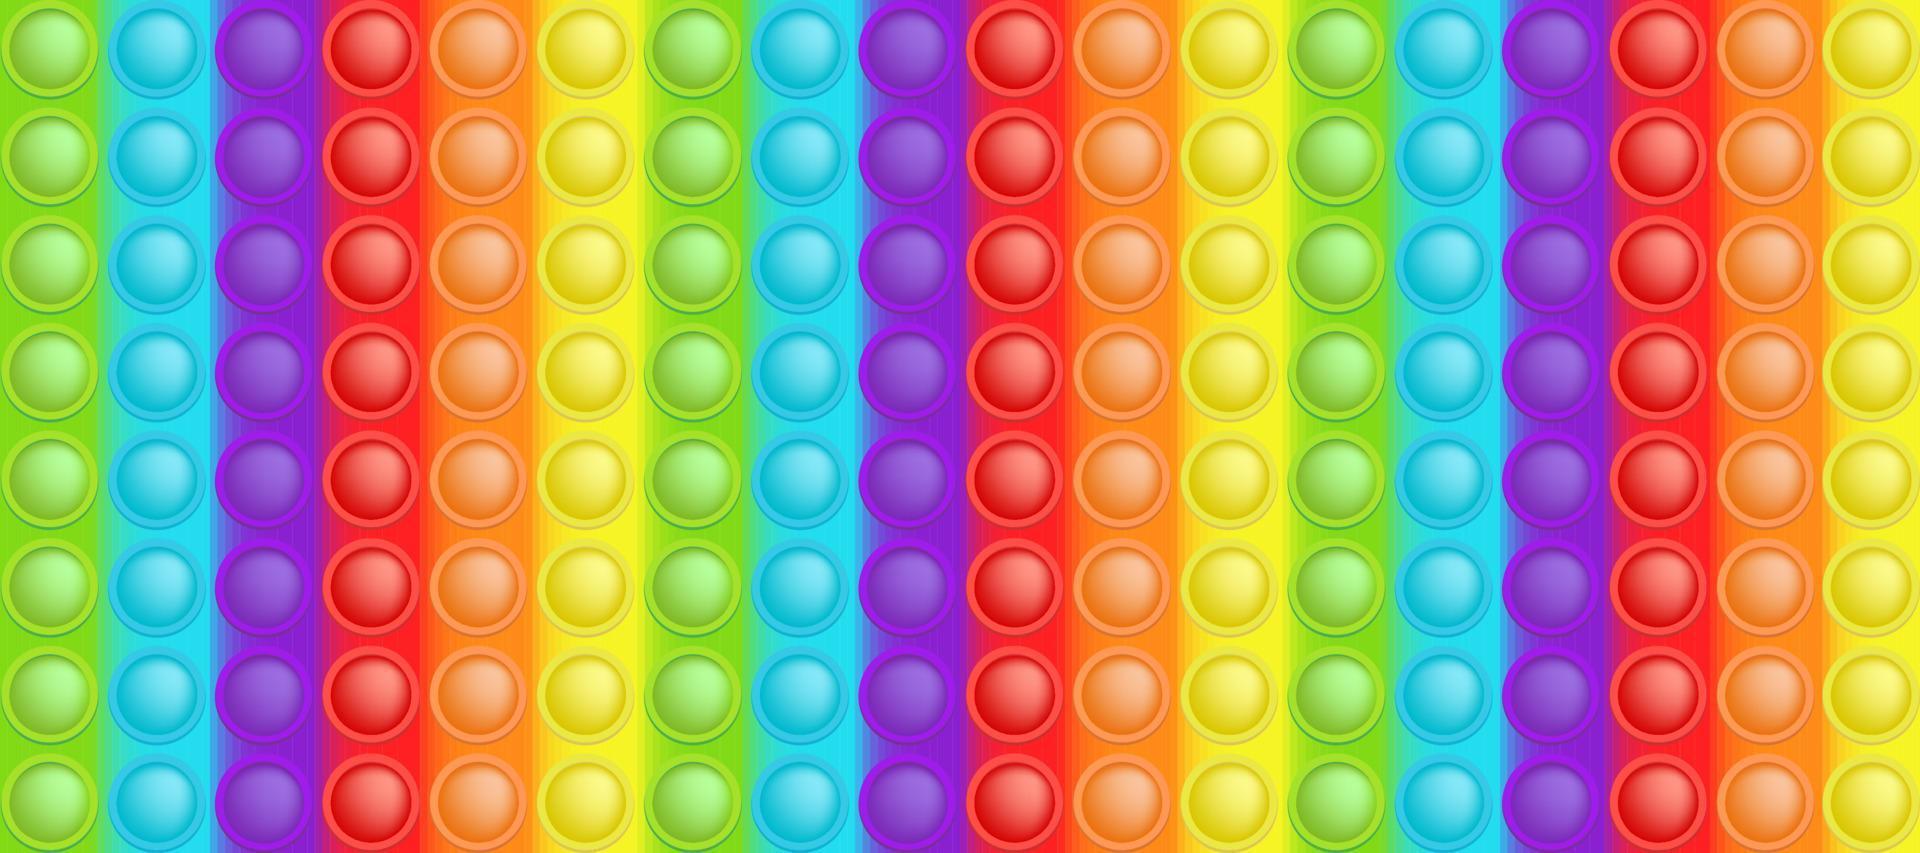 Fondo de arco iris de colores de juguete que hace estallar como un juguete de silicona de moda para inquietos. adictivo juguete de burbujas antiestrés en colores brillantes. ilustración vectorial en formato rectangular adecuado para bunner. vector